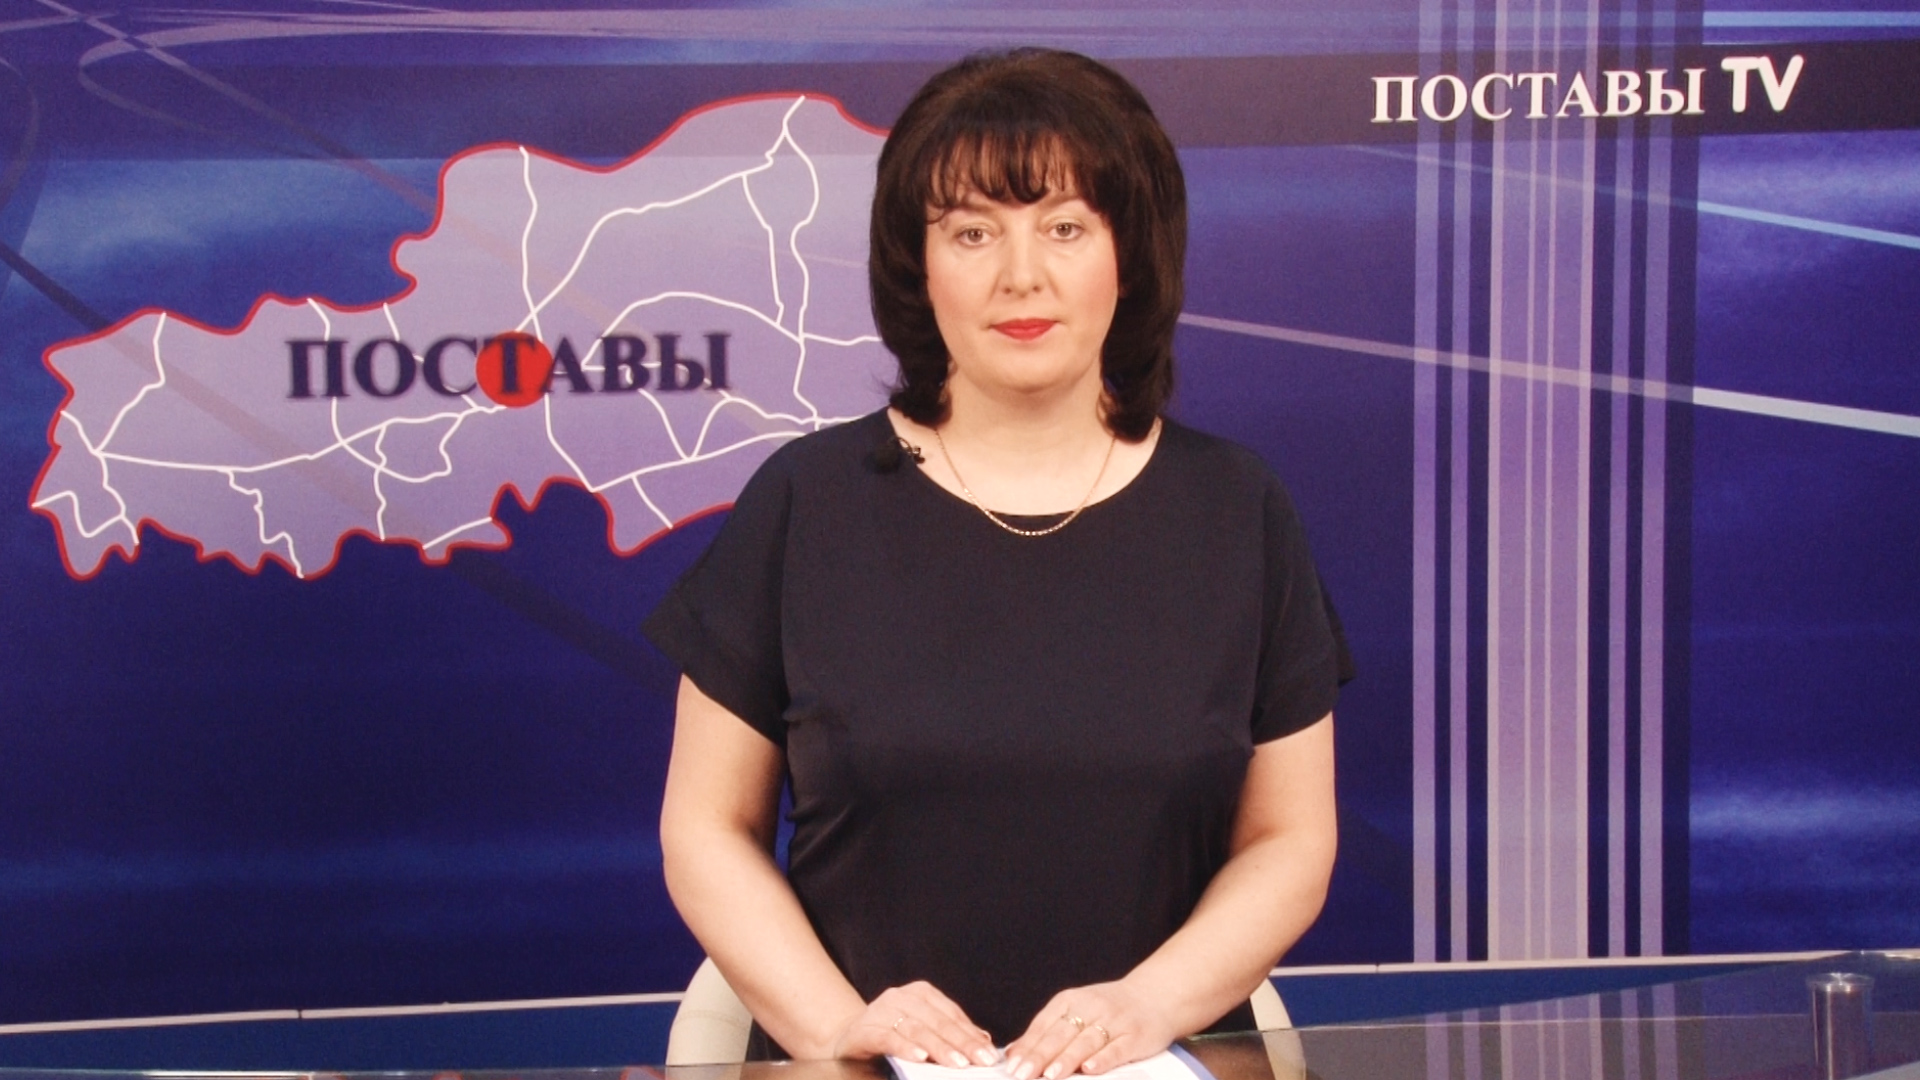 Ольга Наумчик Итоги Поставы ТВ 23.04.2021